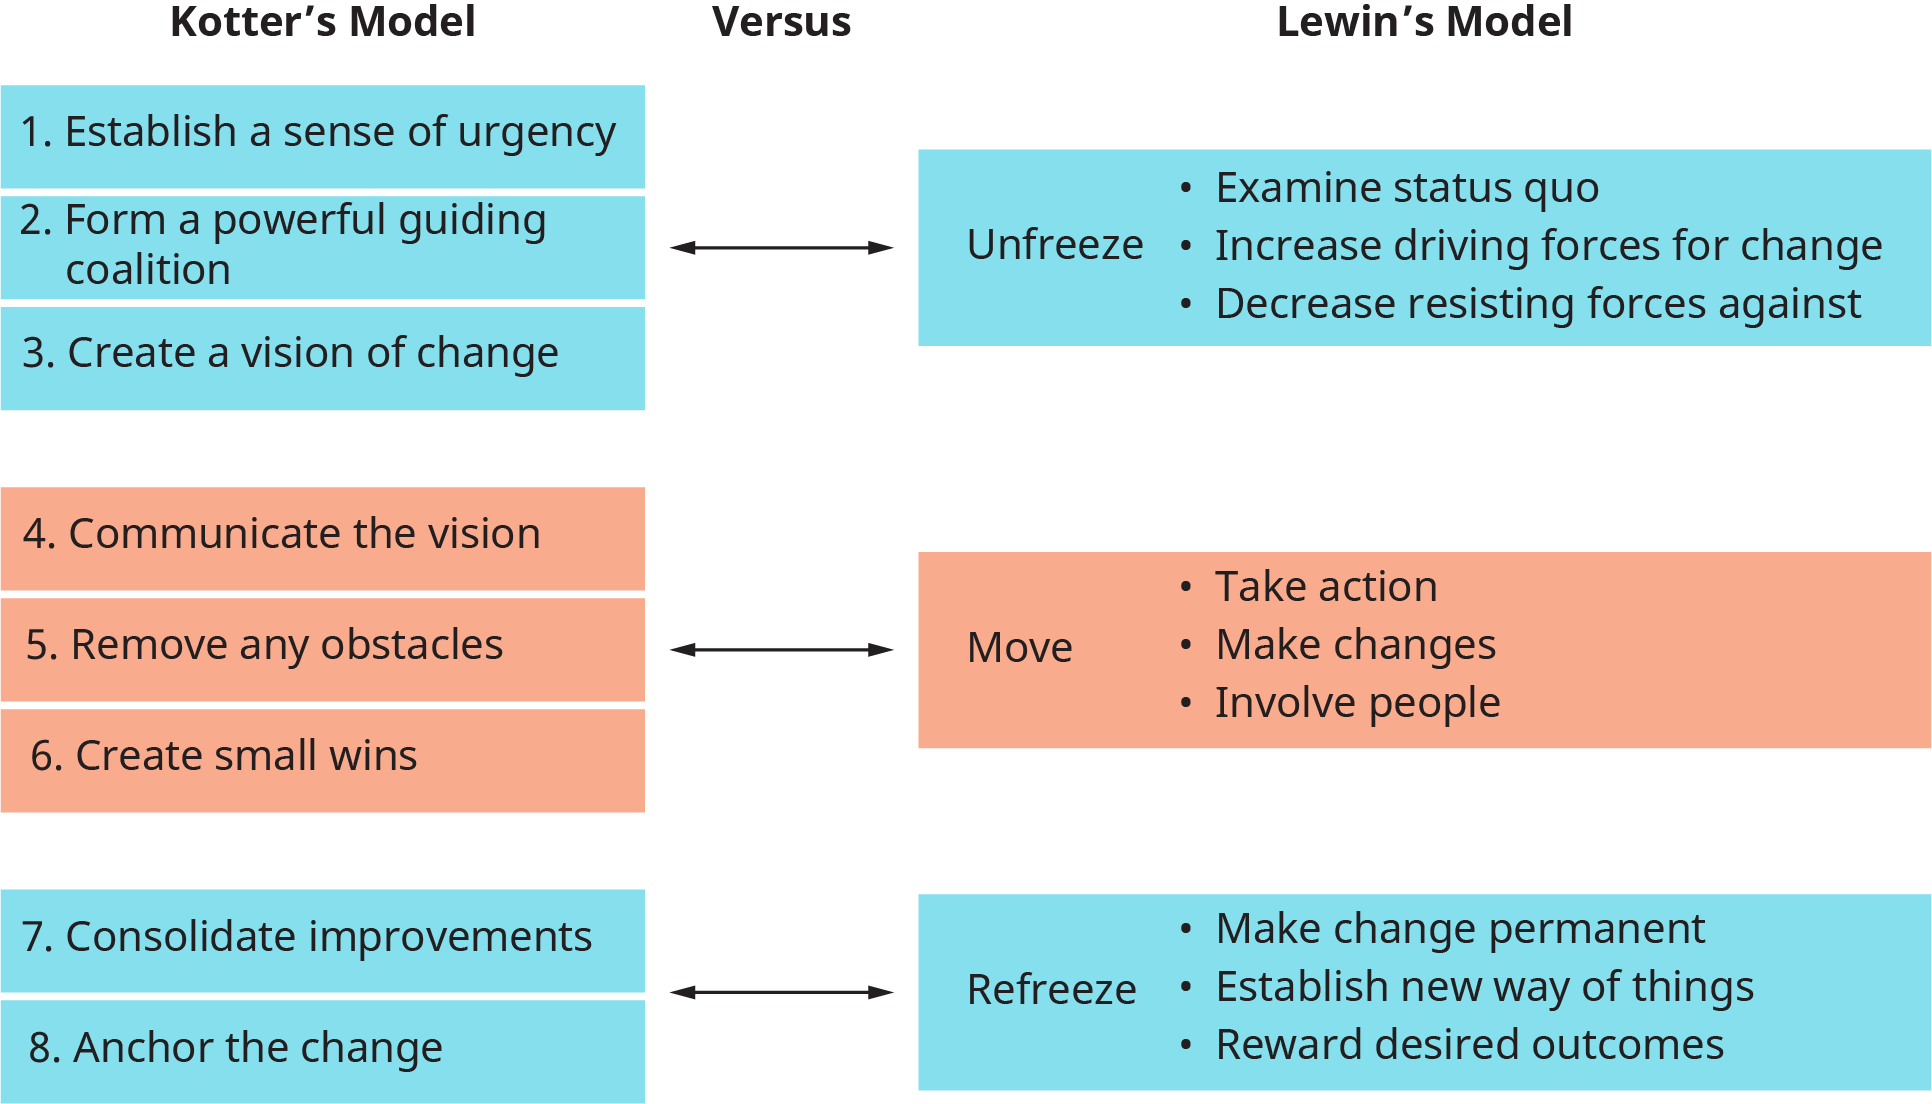 رسم بياني يوضح المقارنة بين نموذج التغيير الخاص بـ Kotter ونموذج التغيير الخاص بـ Lewin.